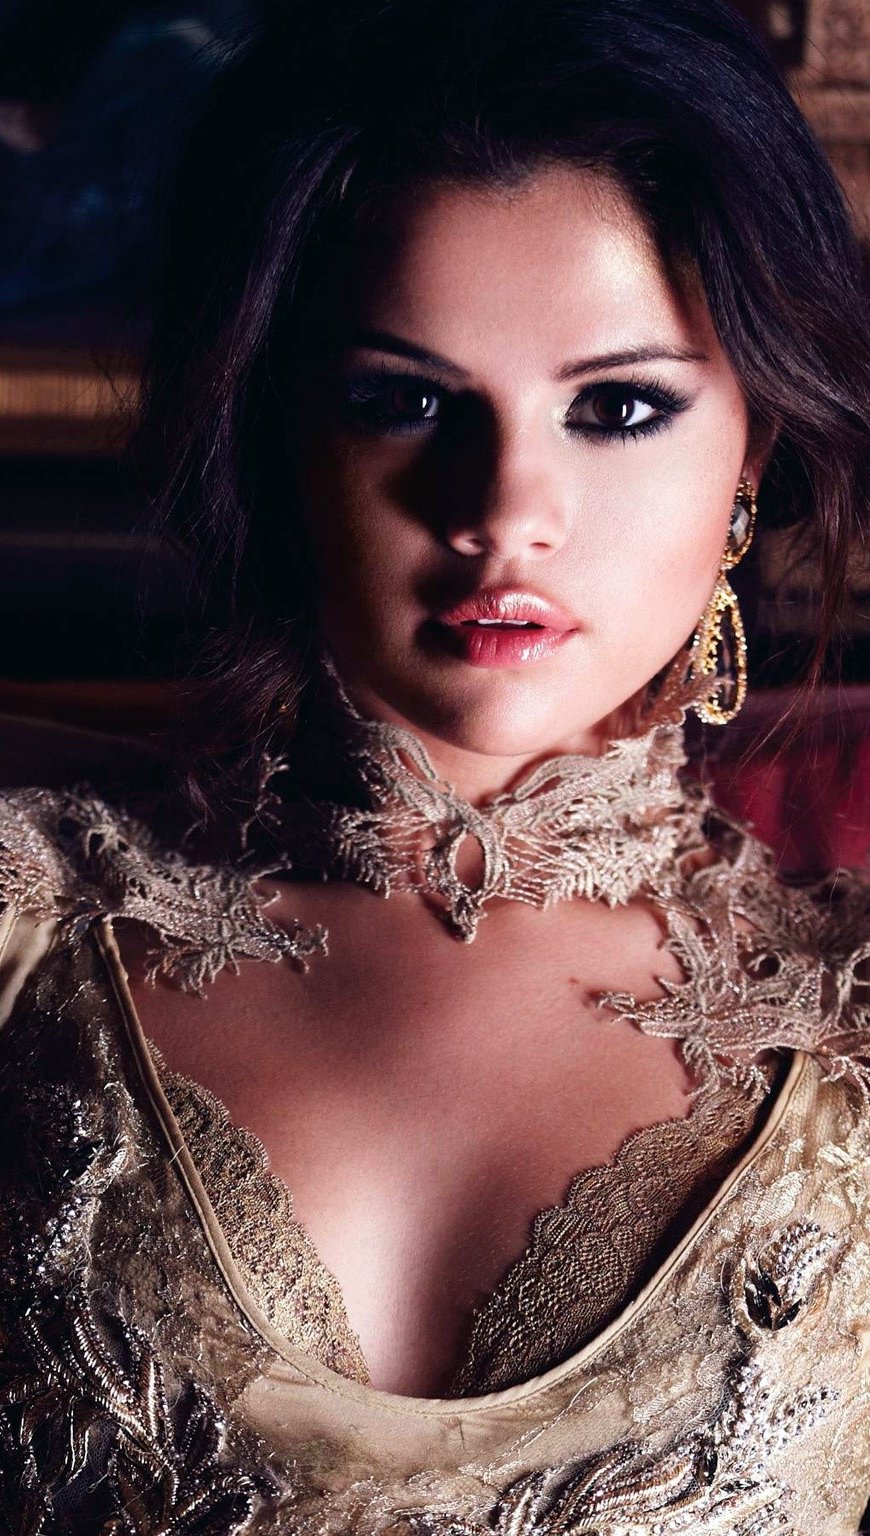 Fondos de pantalla Selena Gomez 1 Vertical